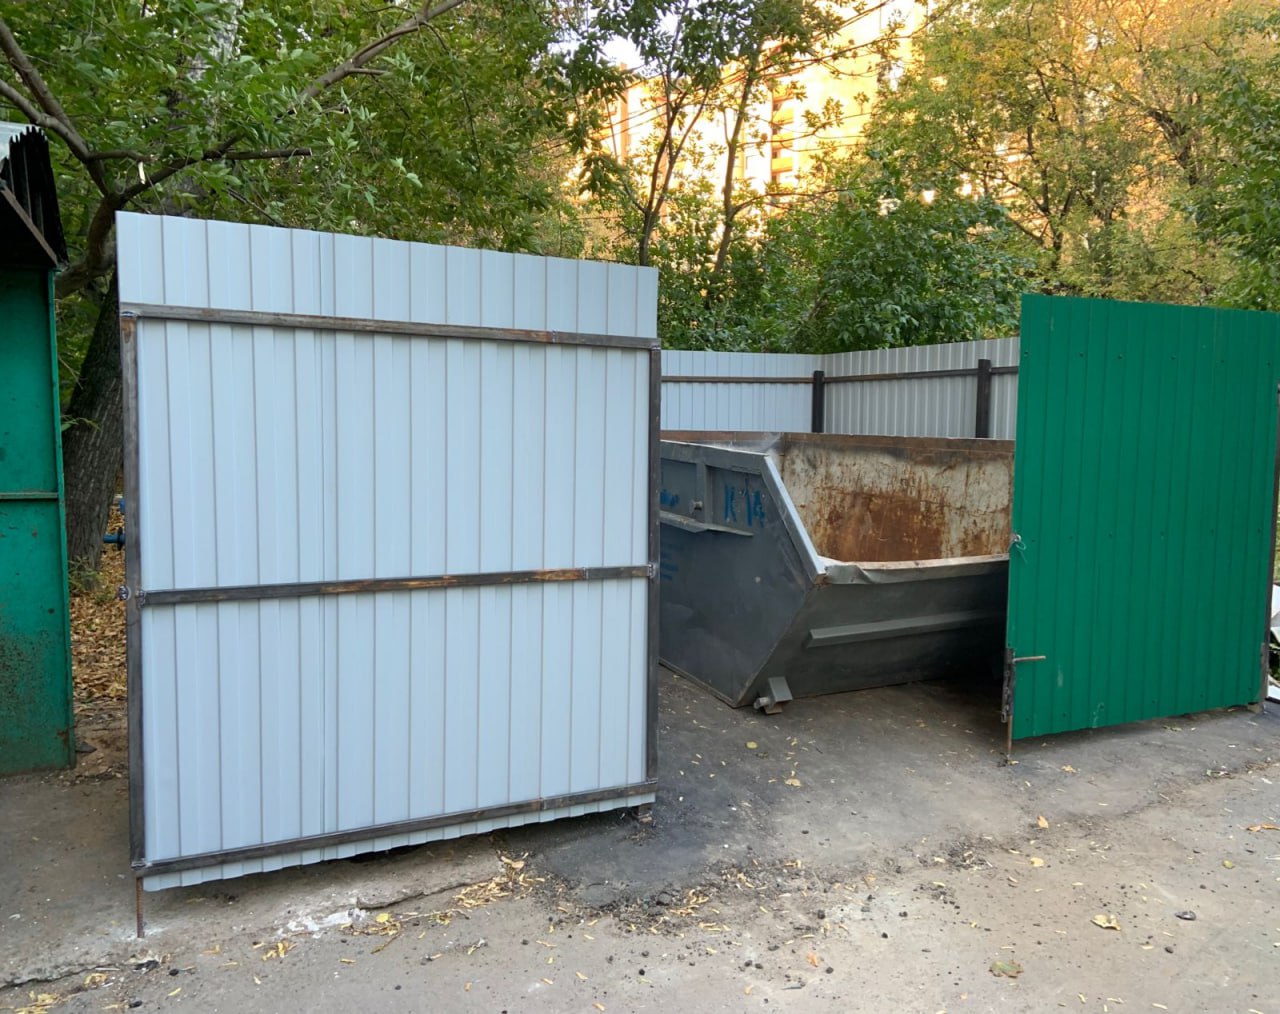 По результатам опроса жителей Красногорска перенесена контейнерная площадка на ул. Вокзальная